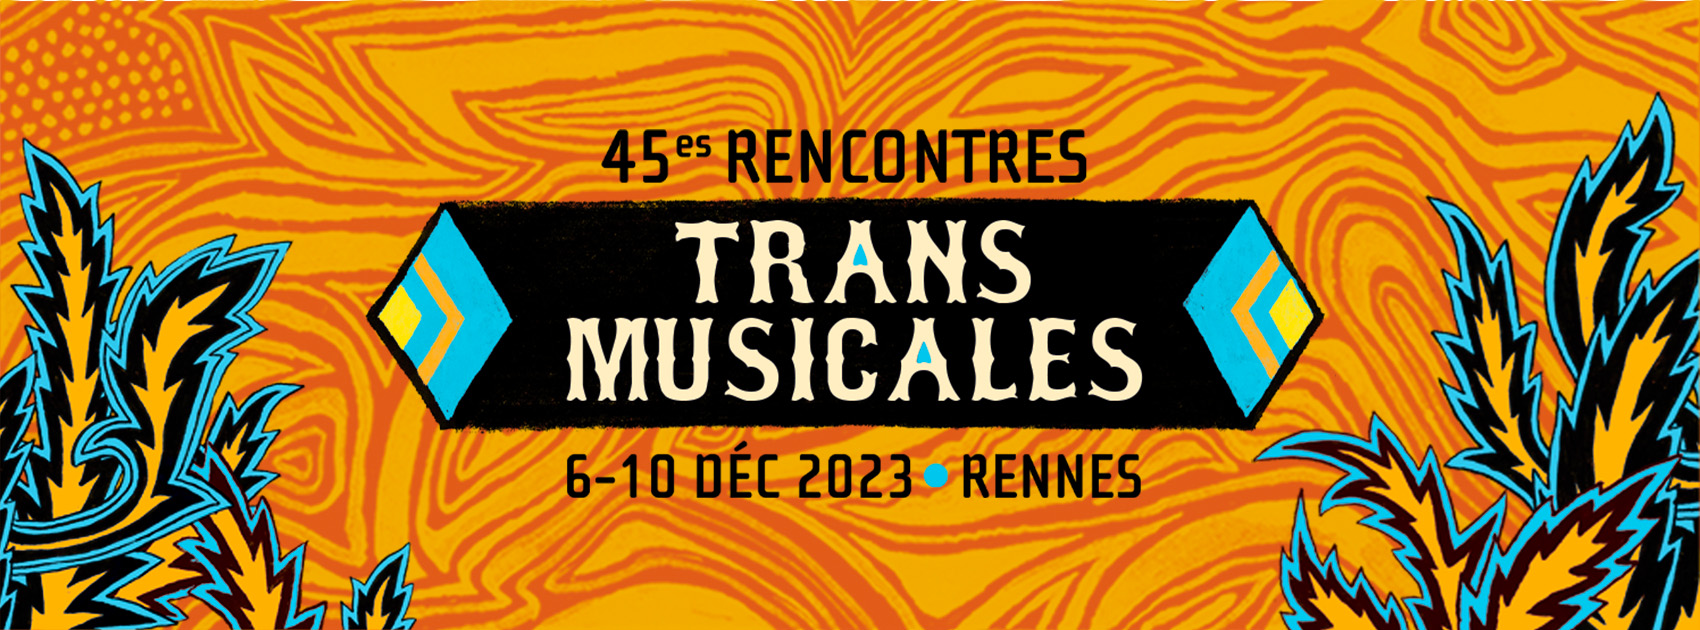 45e Rencontres Trans Musicales de Rennes